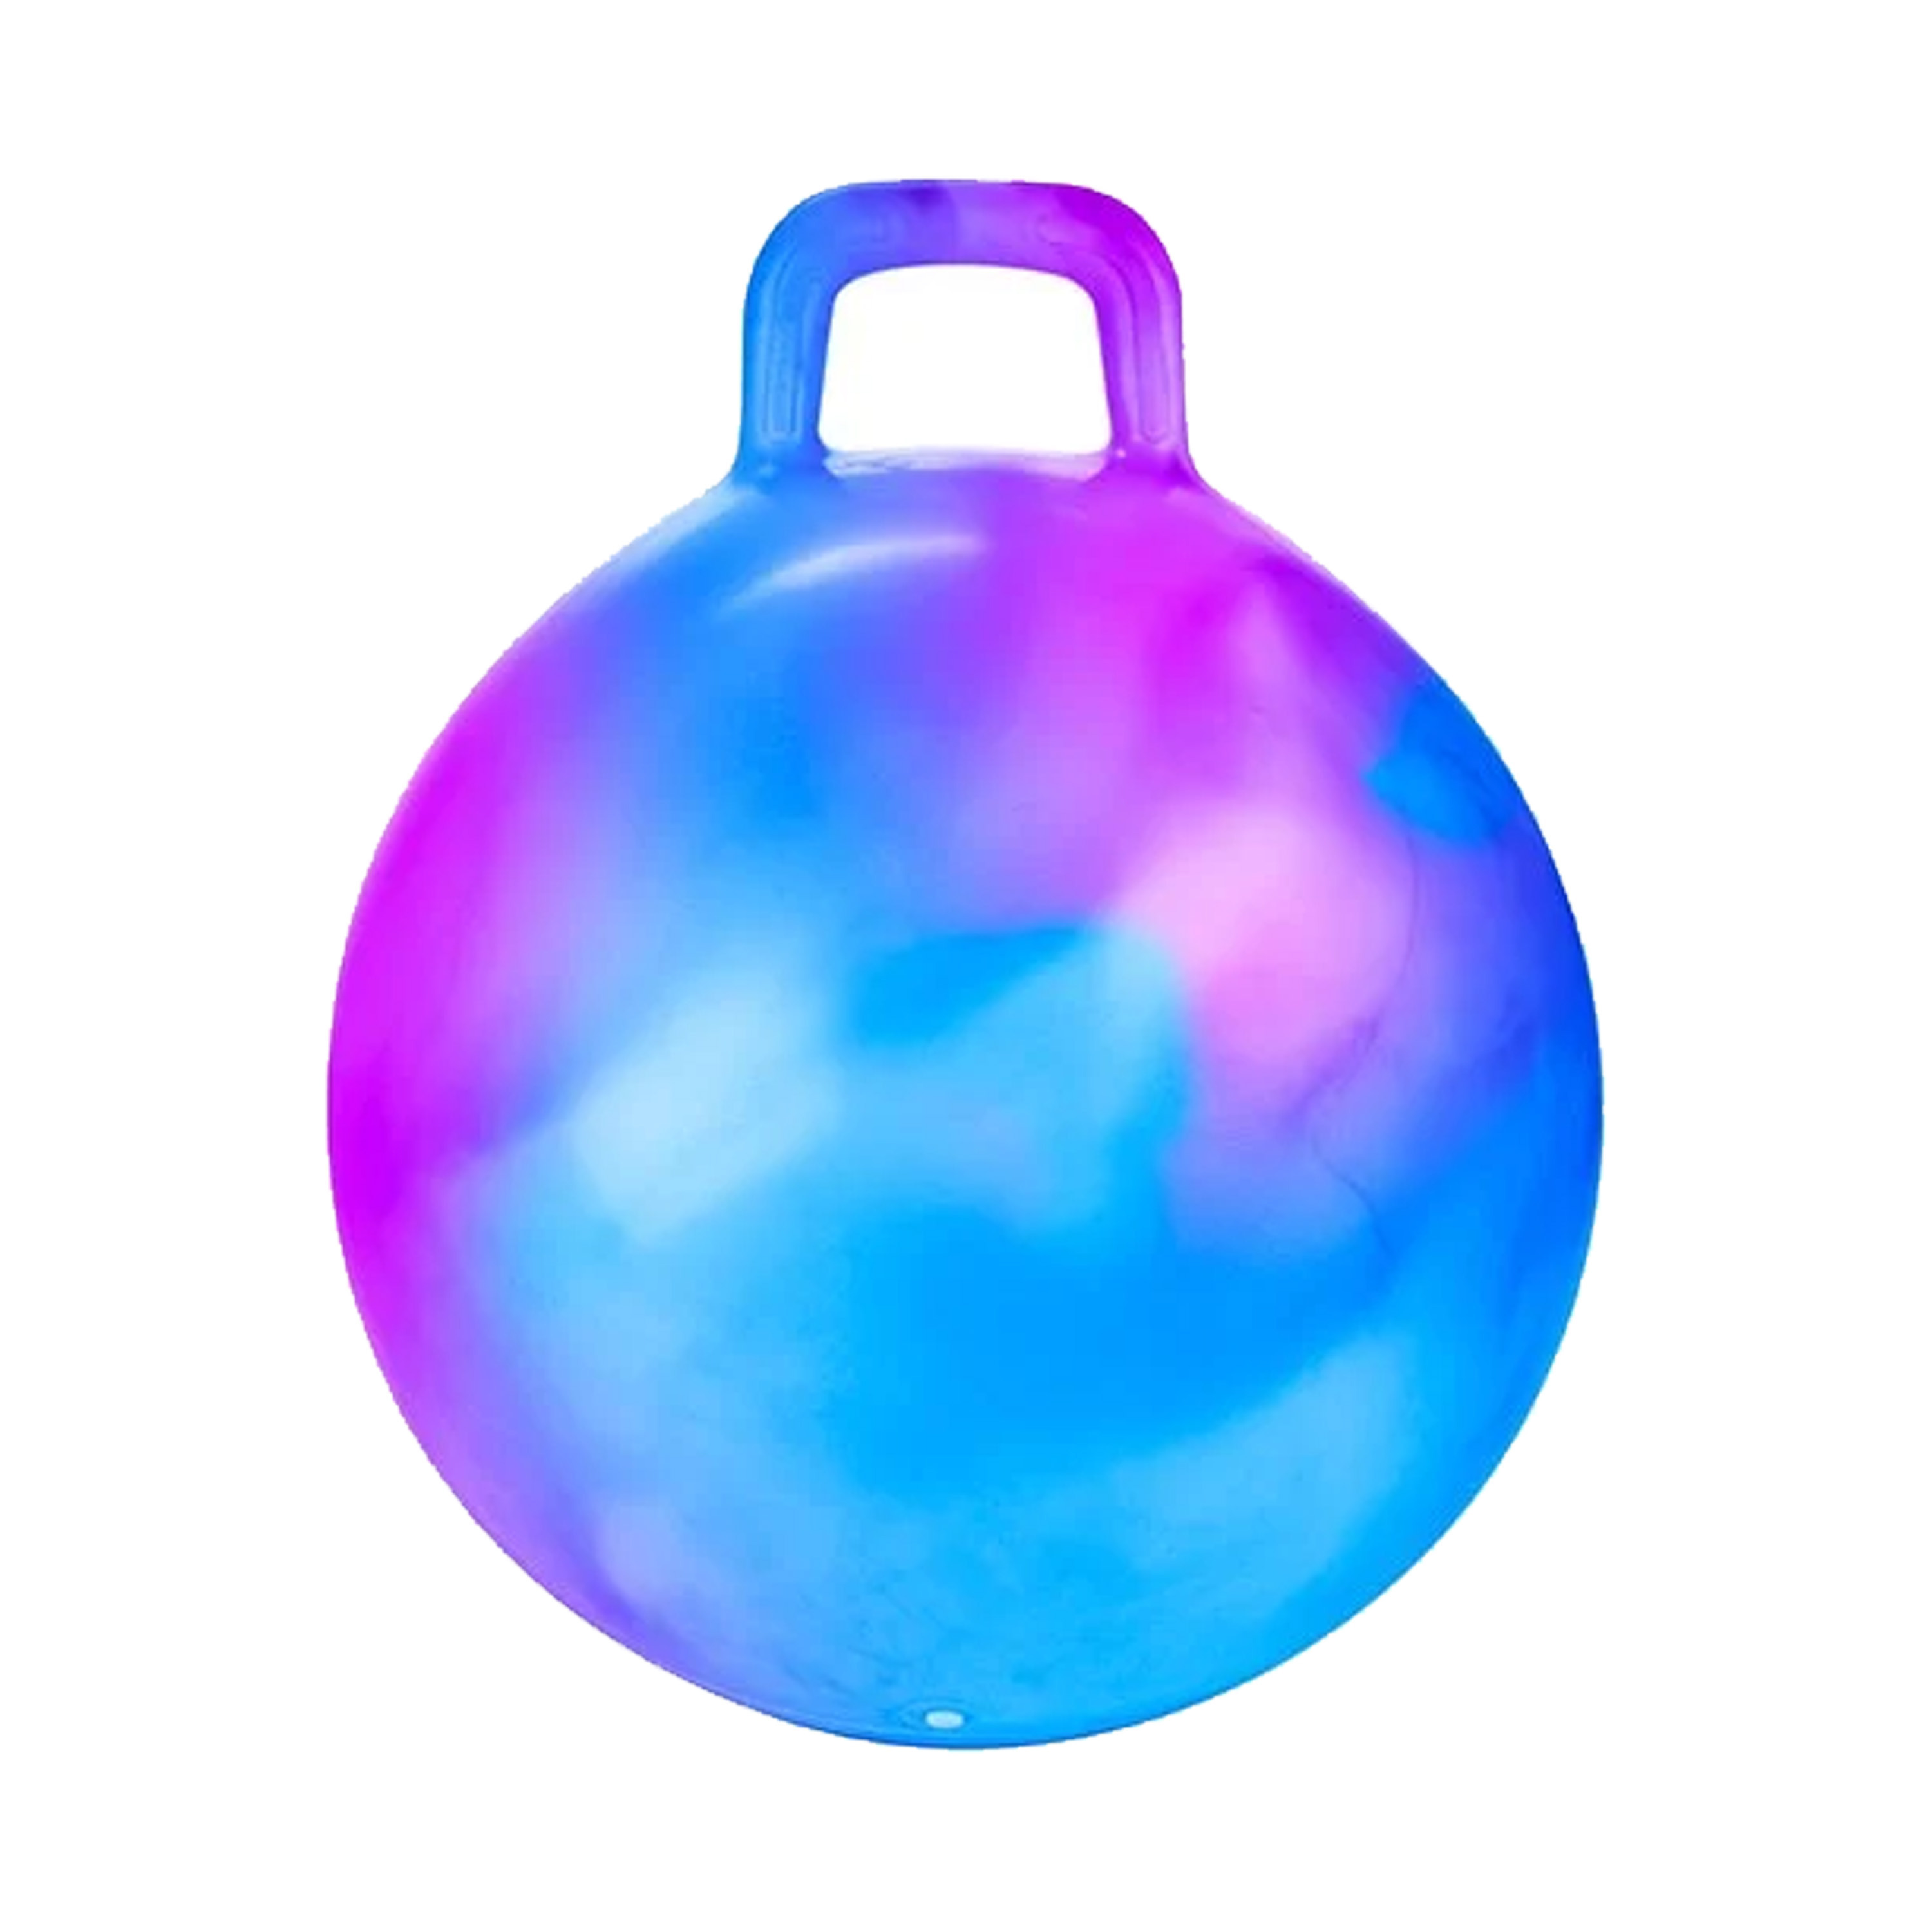 Skippybal marble - blauw/paars - D45 cm - buitenspeelgoed voor kinderen -